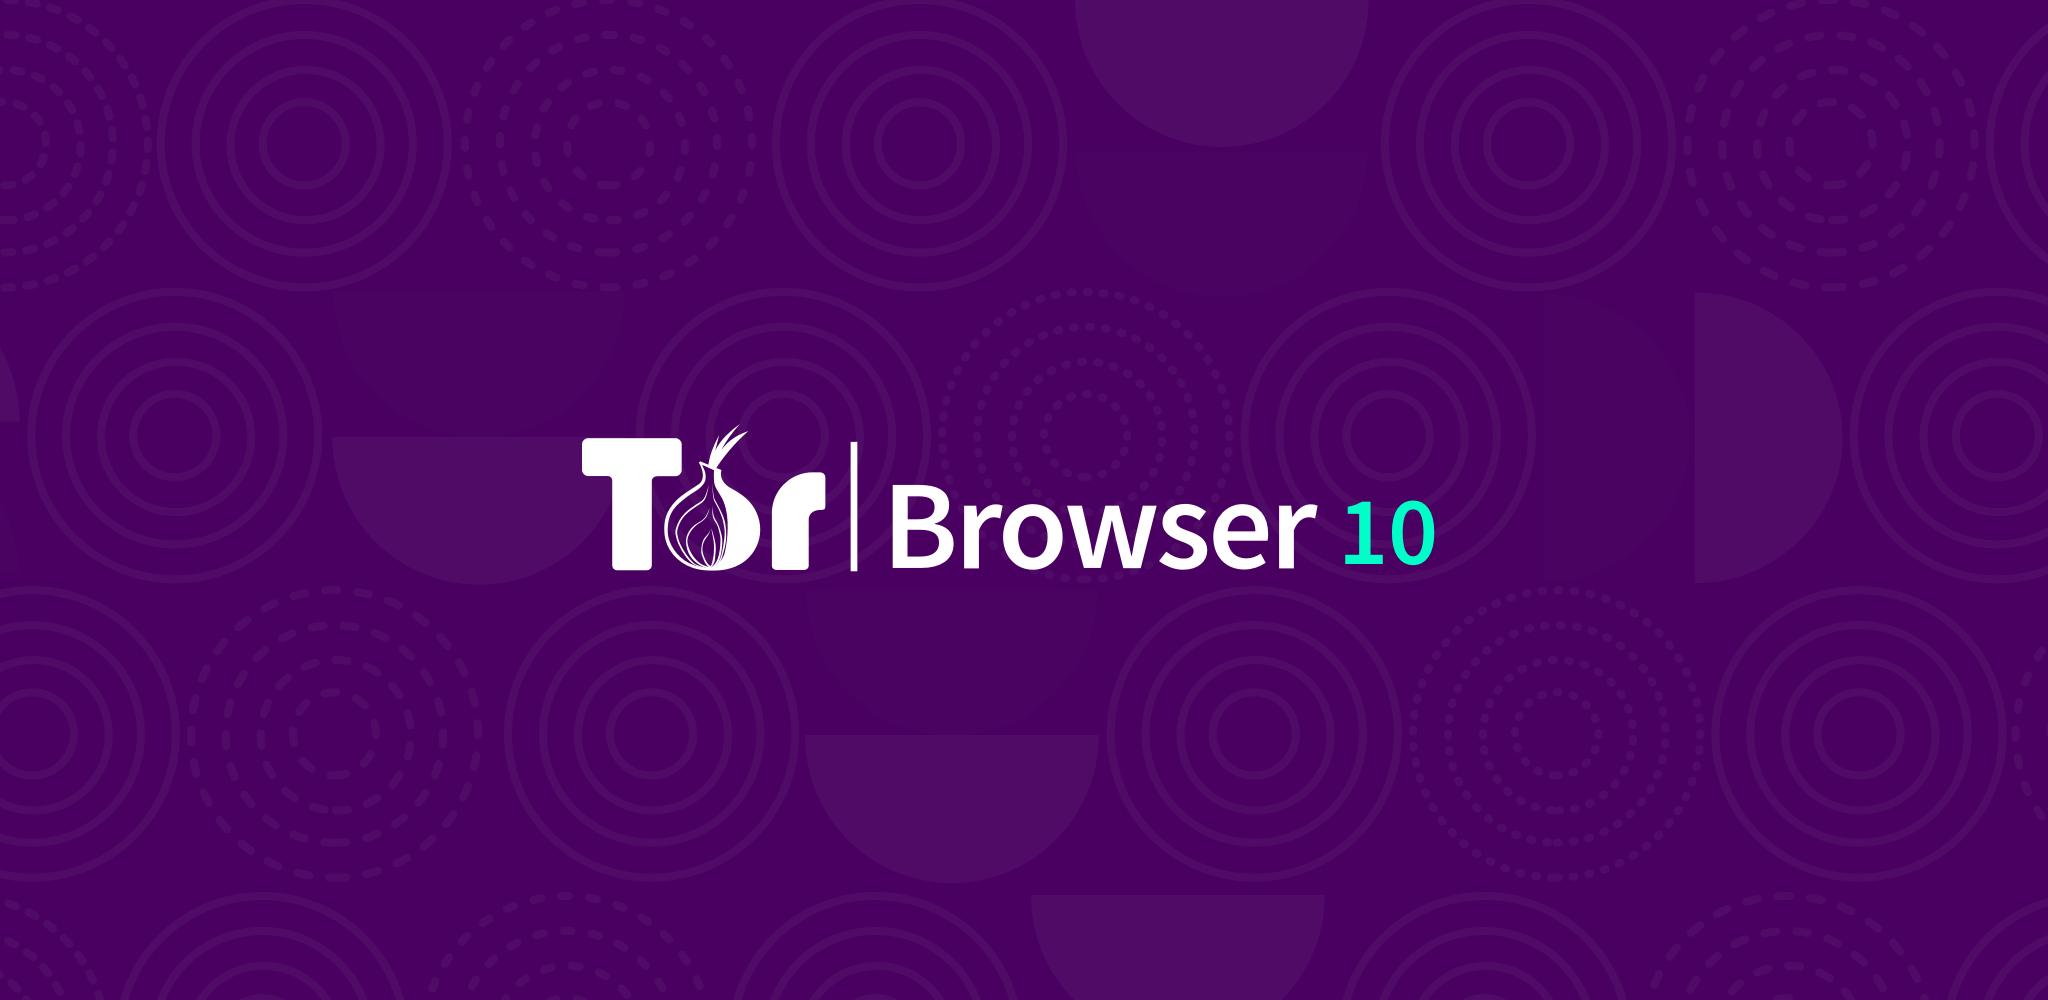 Tor browser 10 mega вход tor browser черный интернет mega